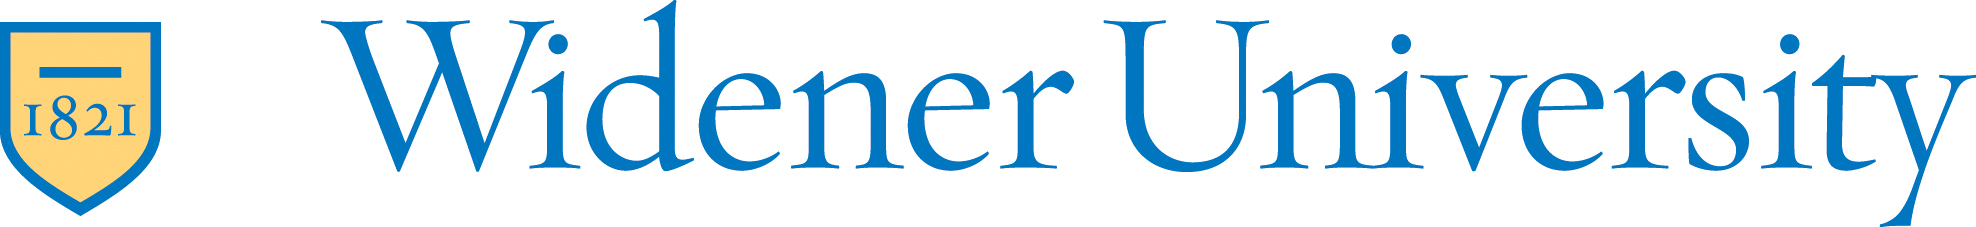 widener logo